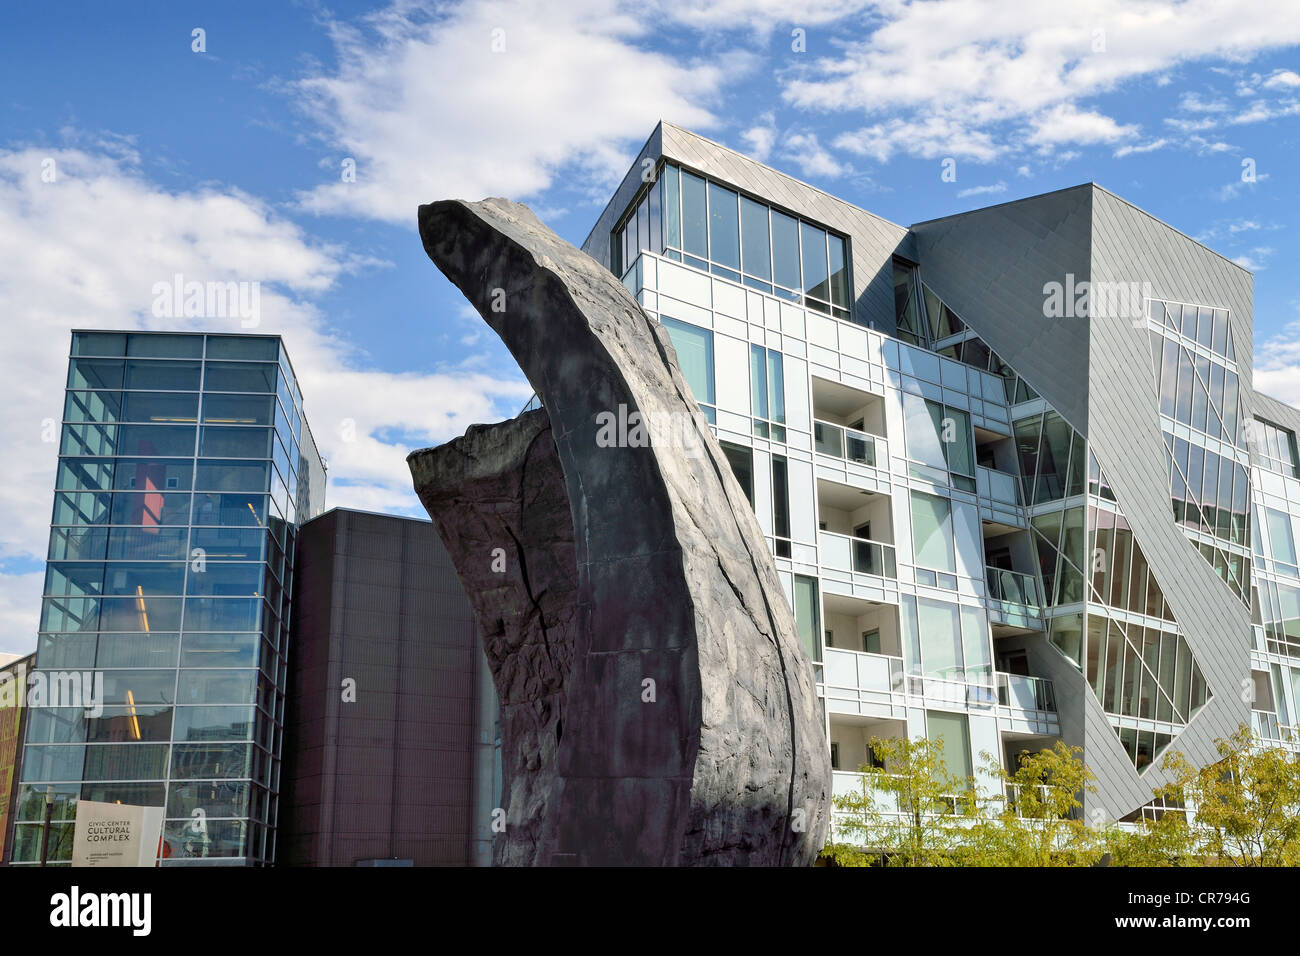 El museo moderno de fachadas de residencias, edificios residenciales en el Centro Cívico Complejo Cultural, con una escultura en granito Foto de stock